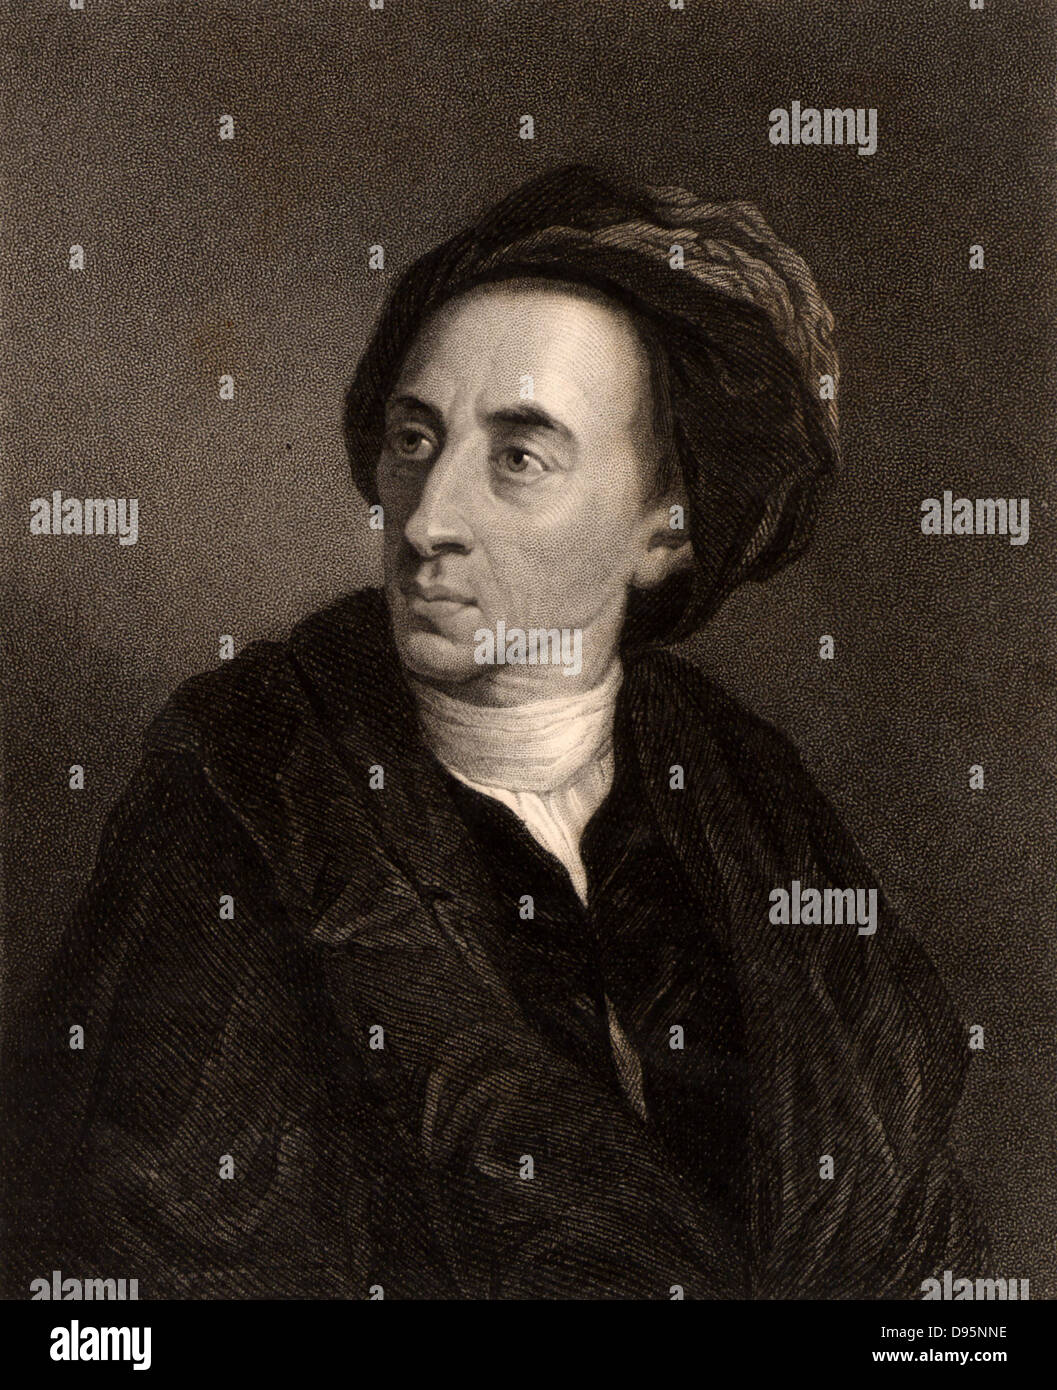 Alexander Pope (1688-1744) poète anglais. Gravure tirée de "la galerie de portraits" tome V, par Charles Knight (Londres, 1835). Banque D'Images